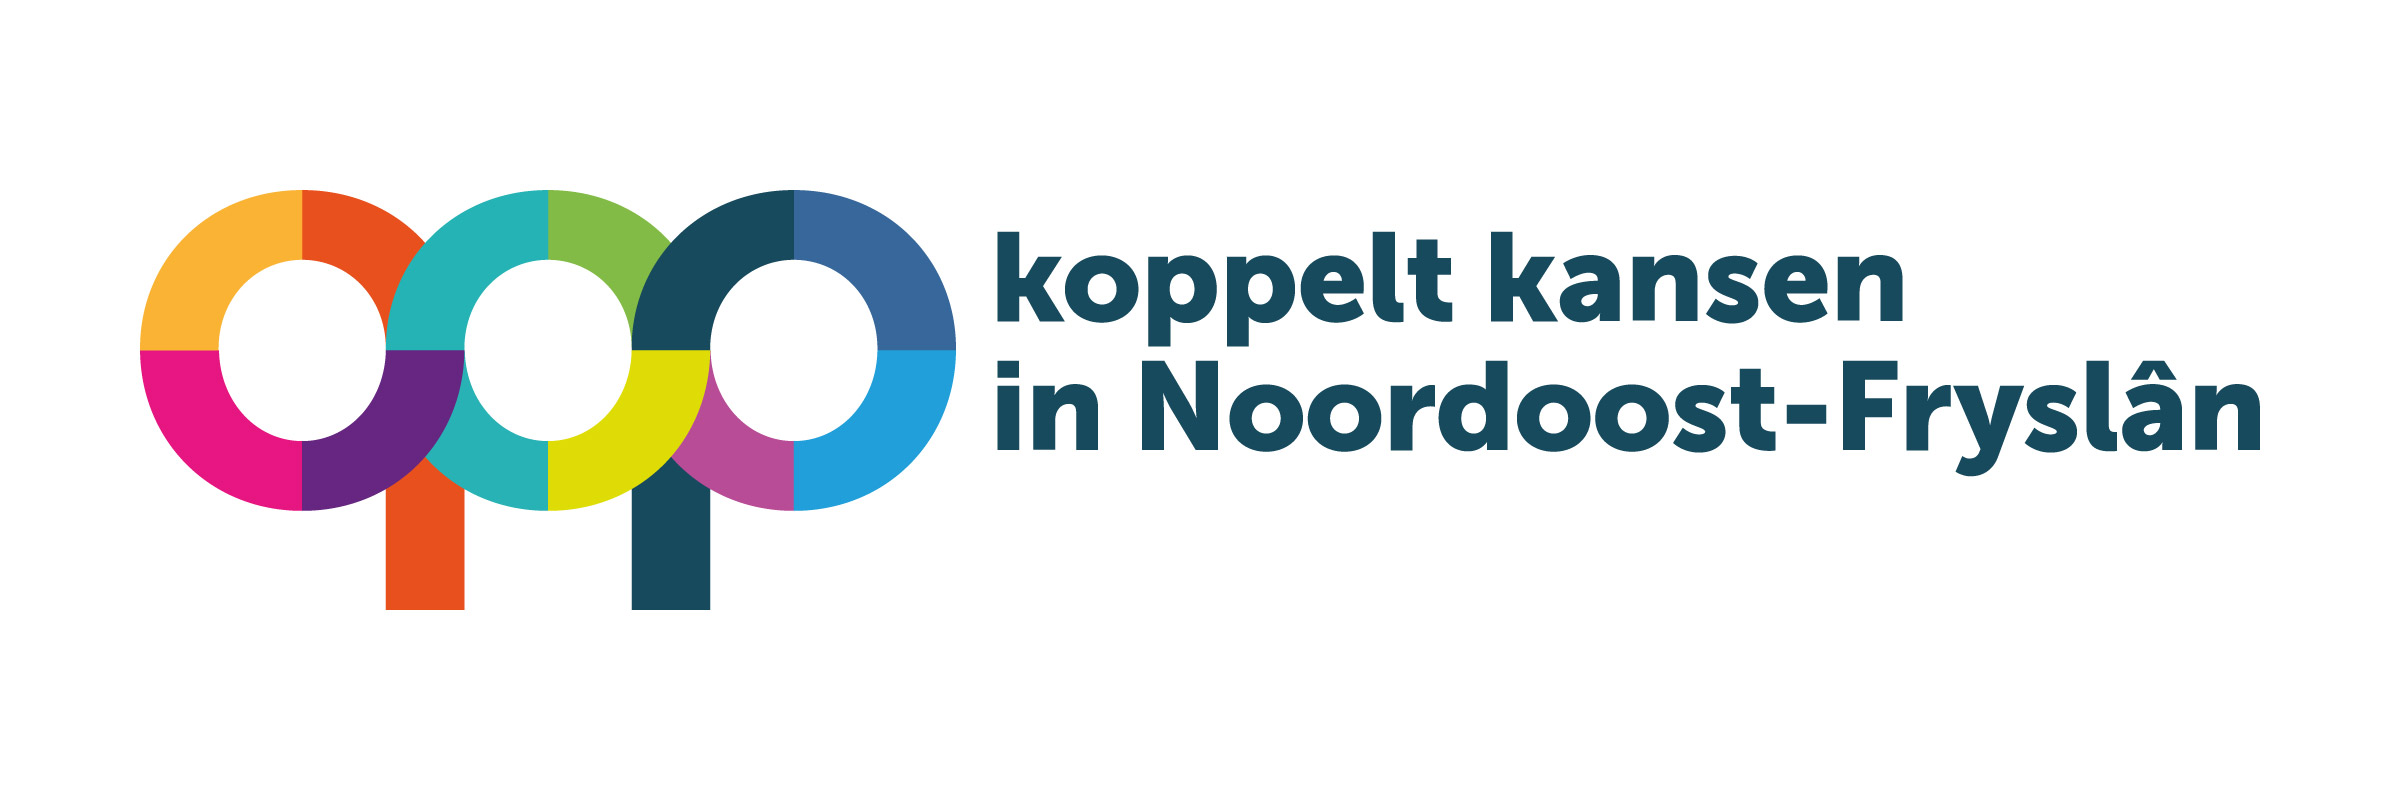 QOP koppelt kansen in Noordoost-Fryslân – Regiodeal Noordoost-Fryslân - QOP